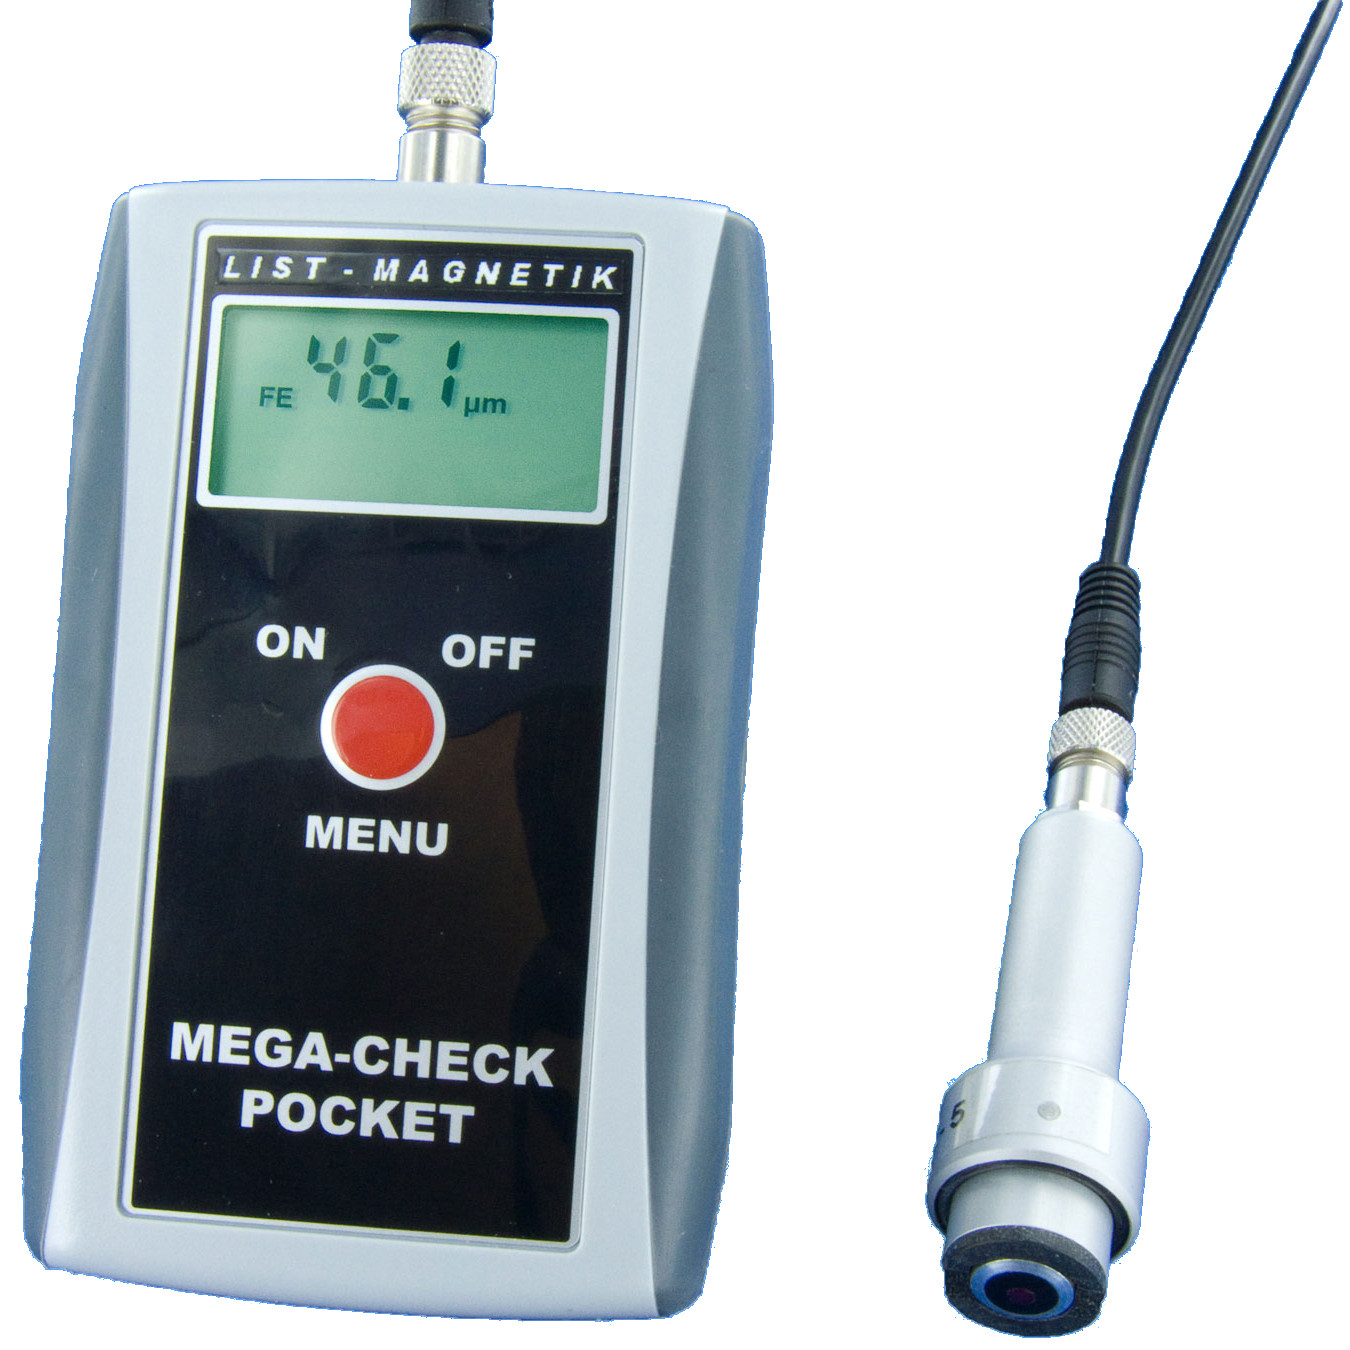 MEGA-CHECK Pocket. appareil mesure d'épaisseur